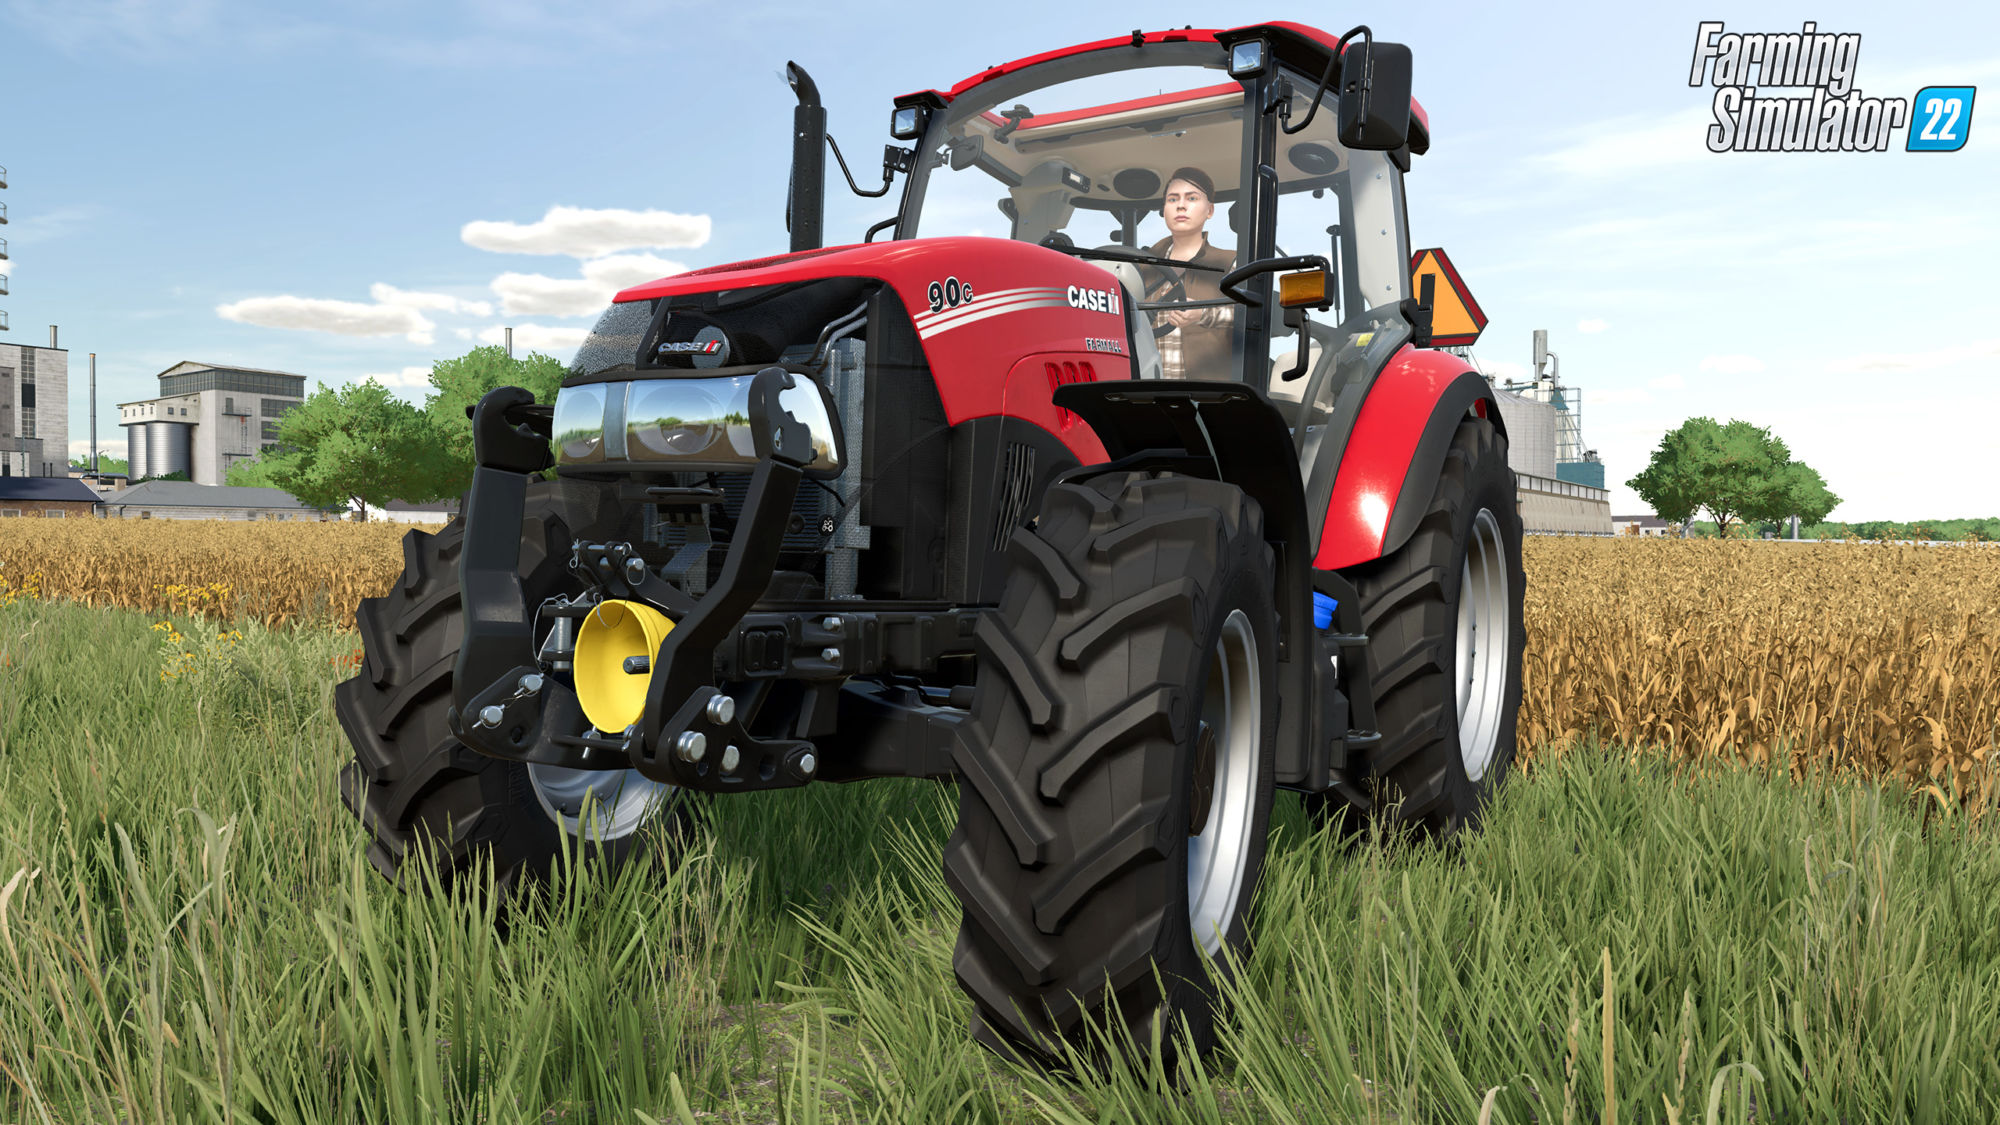 Notícias Farming Simulator 22